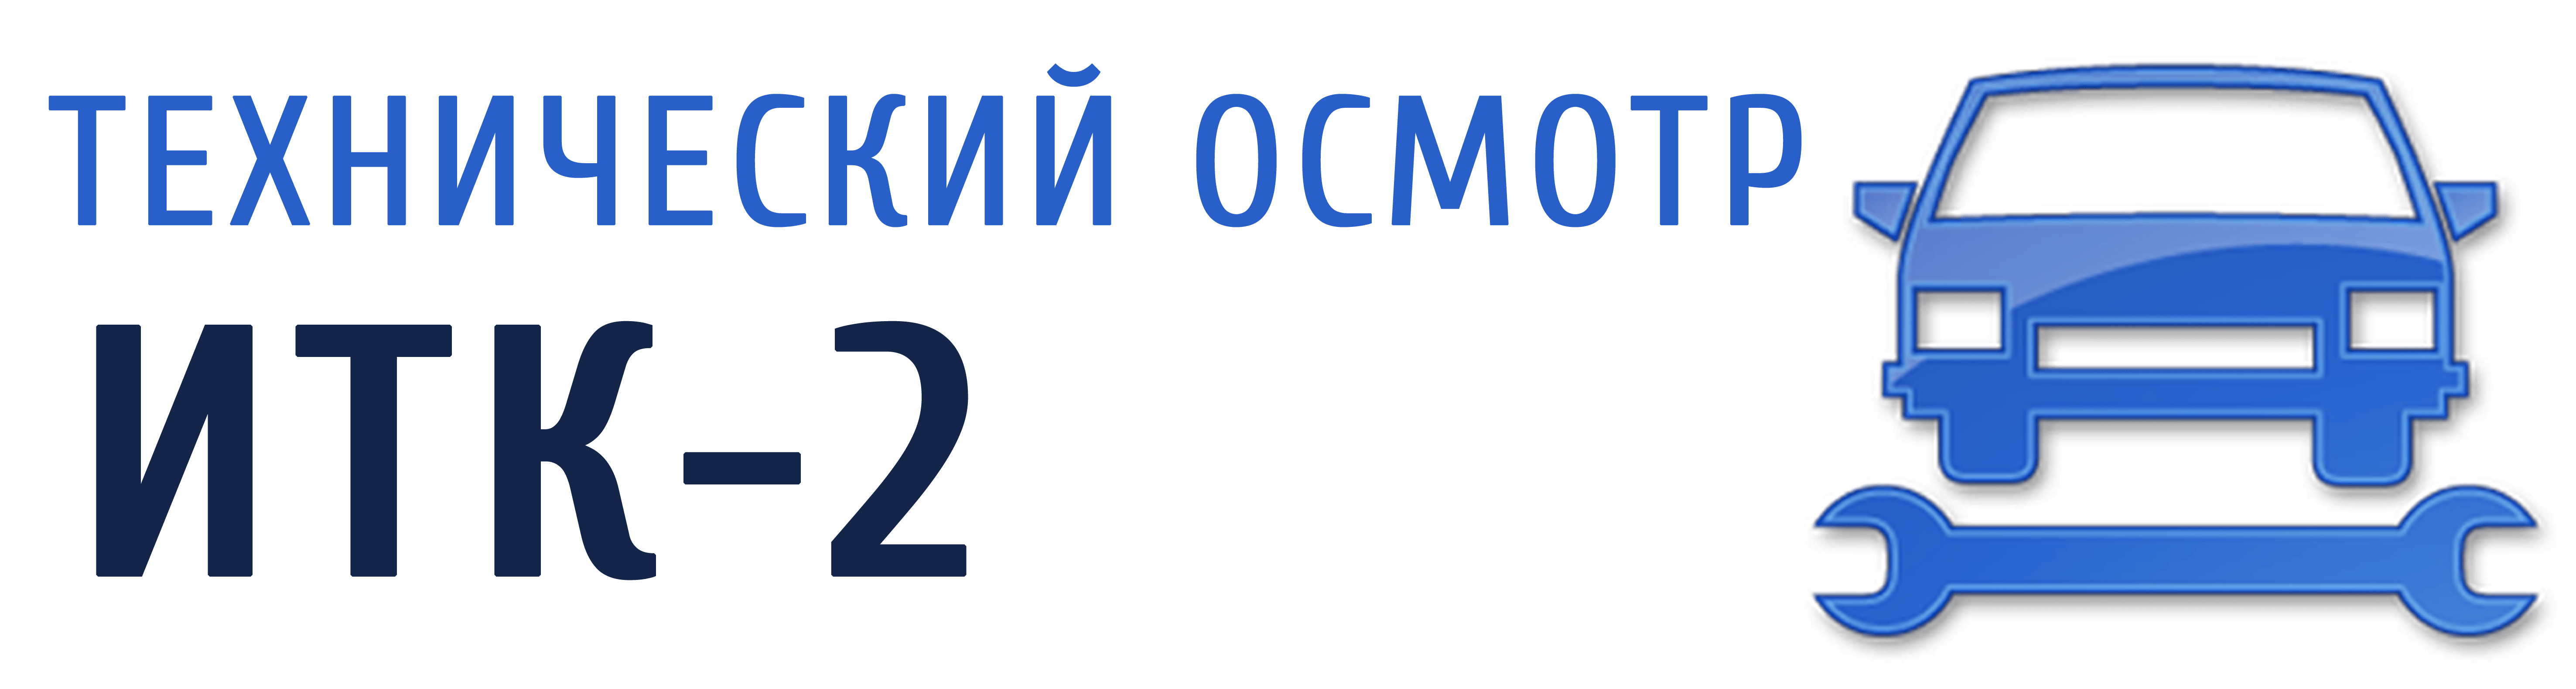 ИТК2 — Технический осмотр в городе Иваново